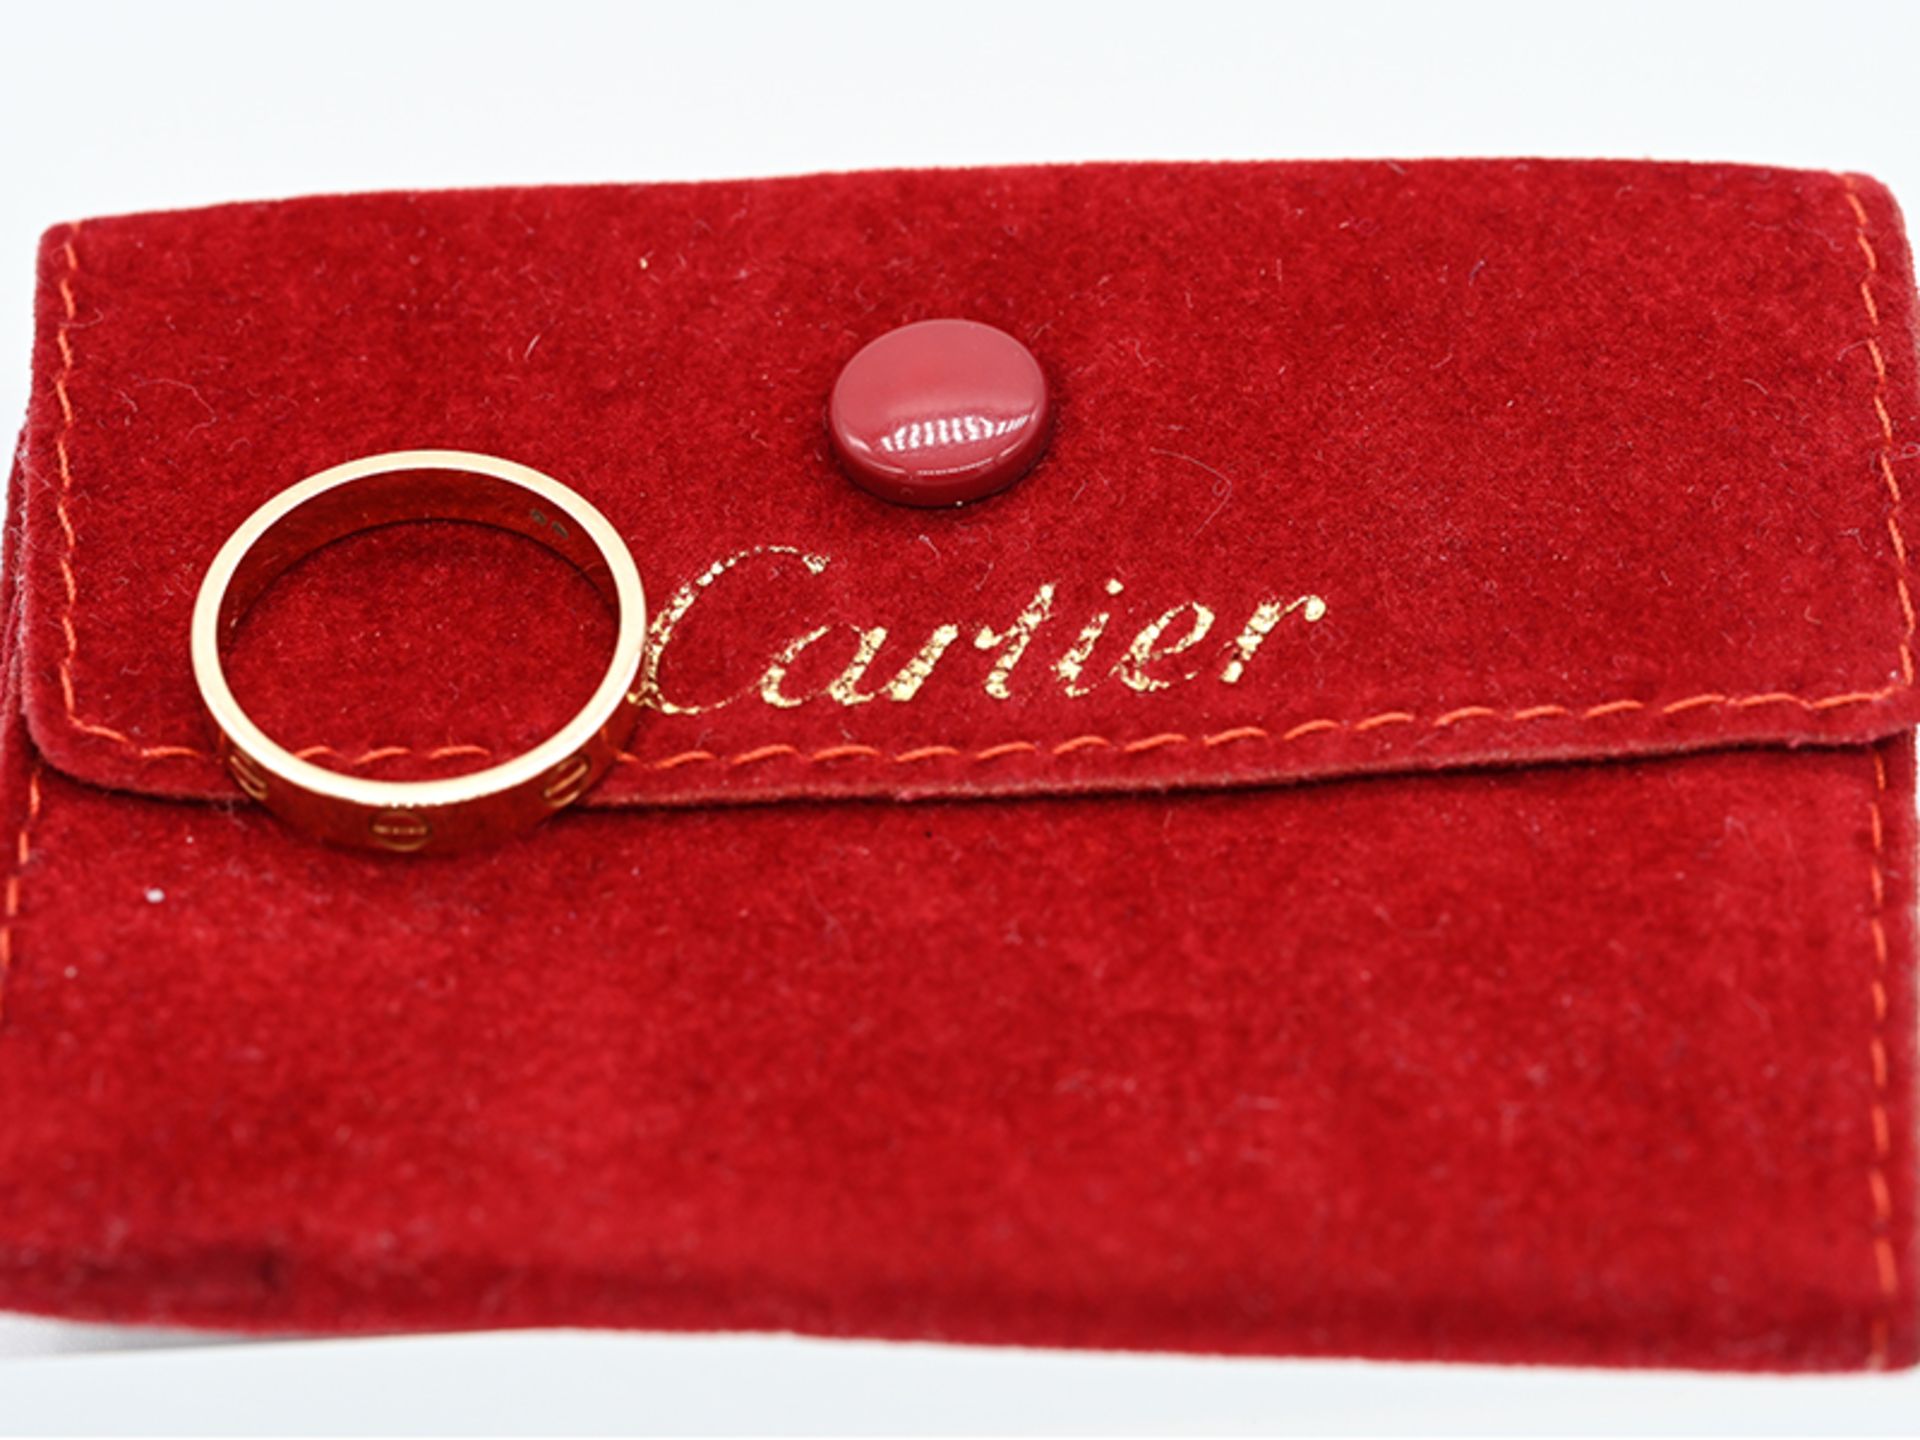 Ring "Mini Love" von Cartier, Paris, 21. Jh. 750/- Roségold. Gesamtgewicht ca. 3,5 g. Bandform mit - Bild 2 aus 3